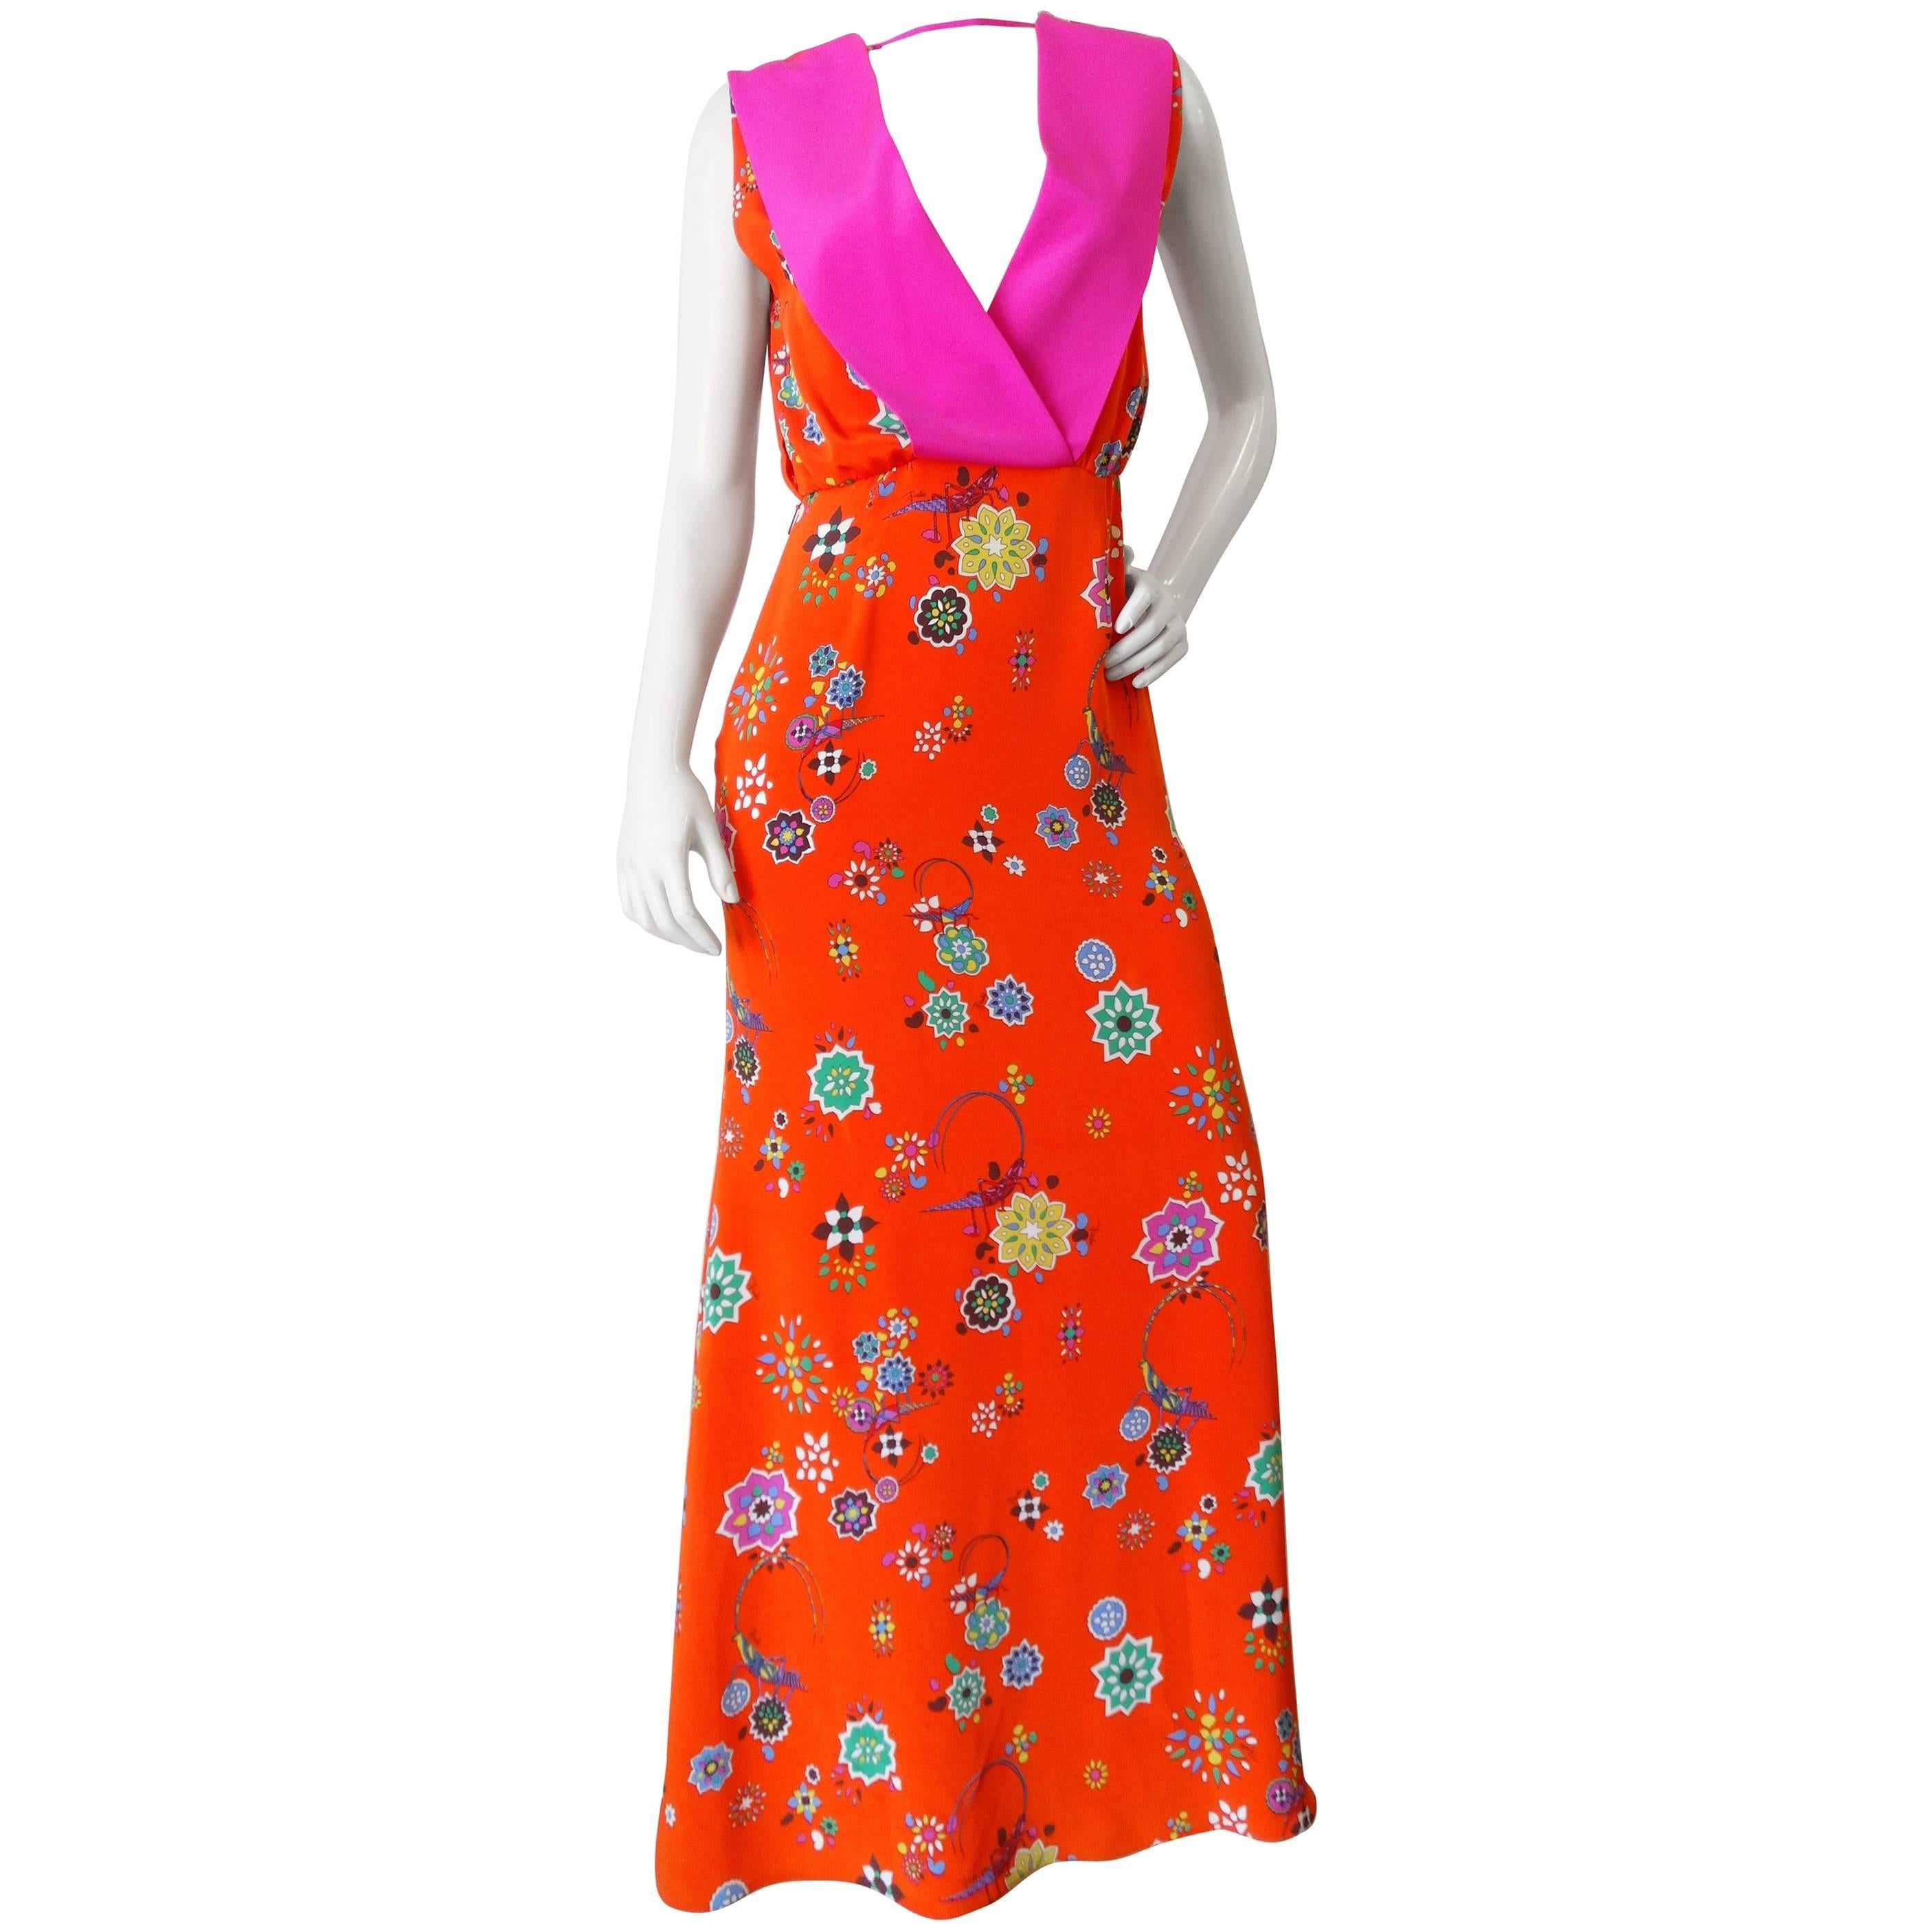 Emilio Pucci Orange and Pink Grasshopper Print Dress 